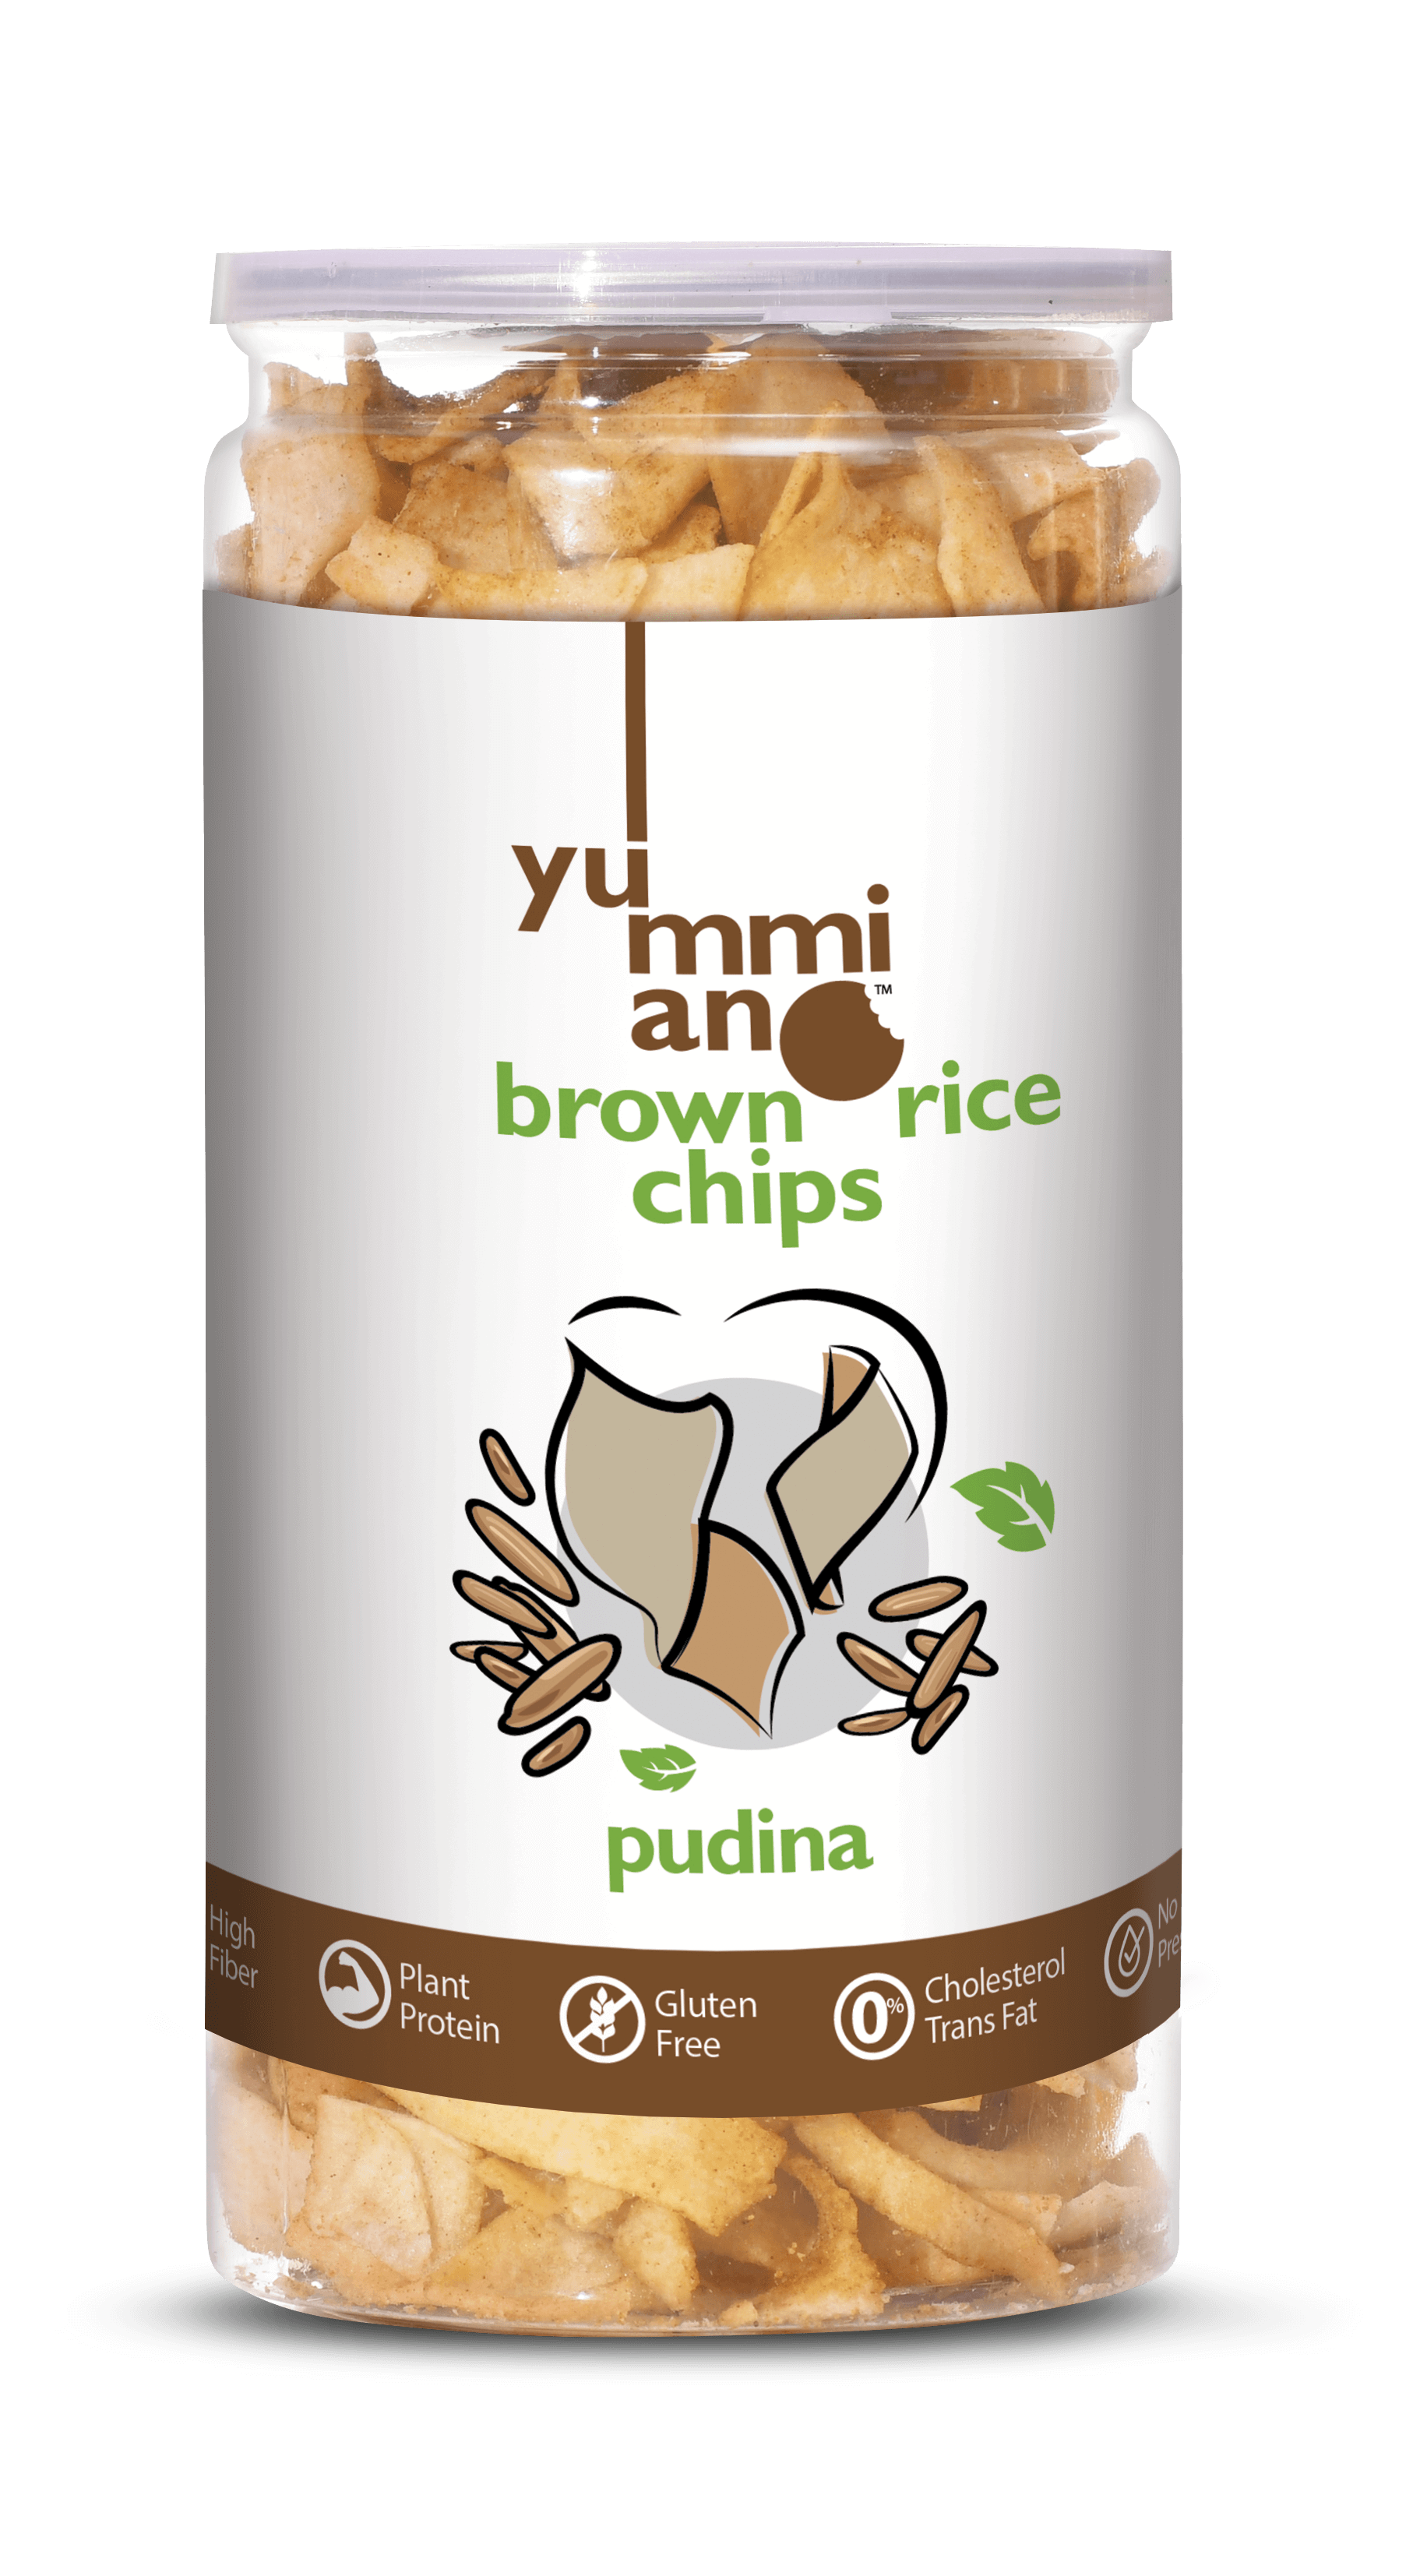 Yummiano Brown Rice Chips â€šÃ„Ã¶âˆšÃ‘âˆšÂ¨ Pudina Image